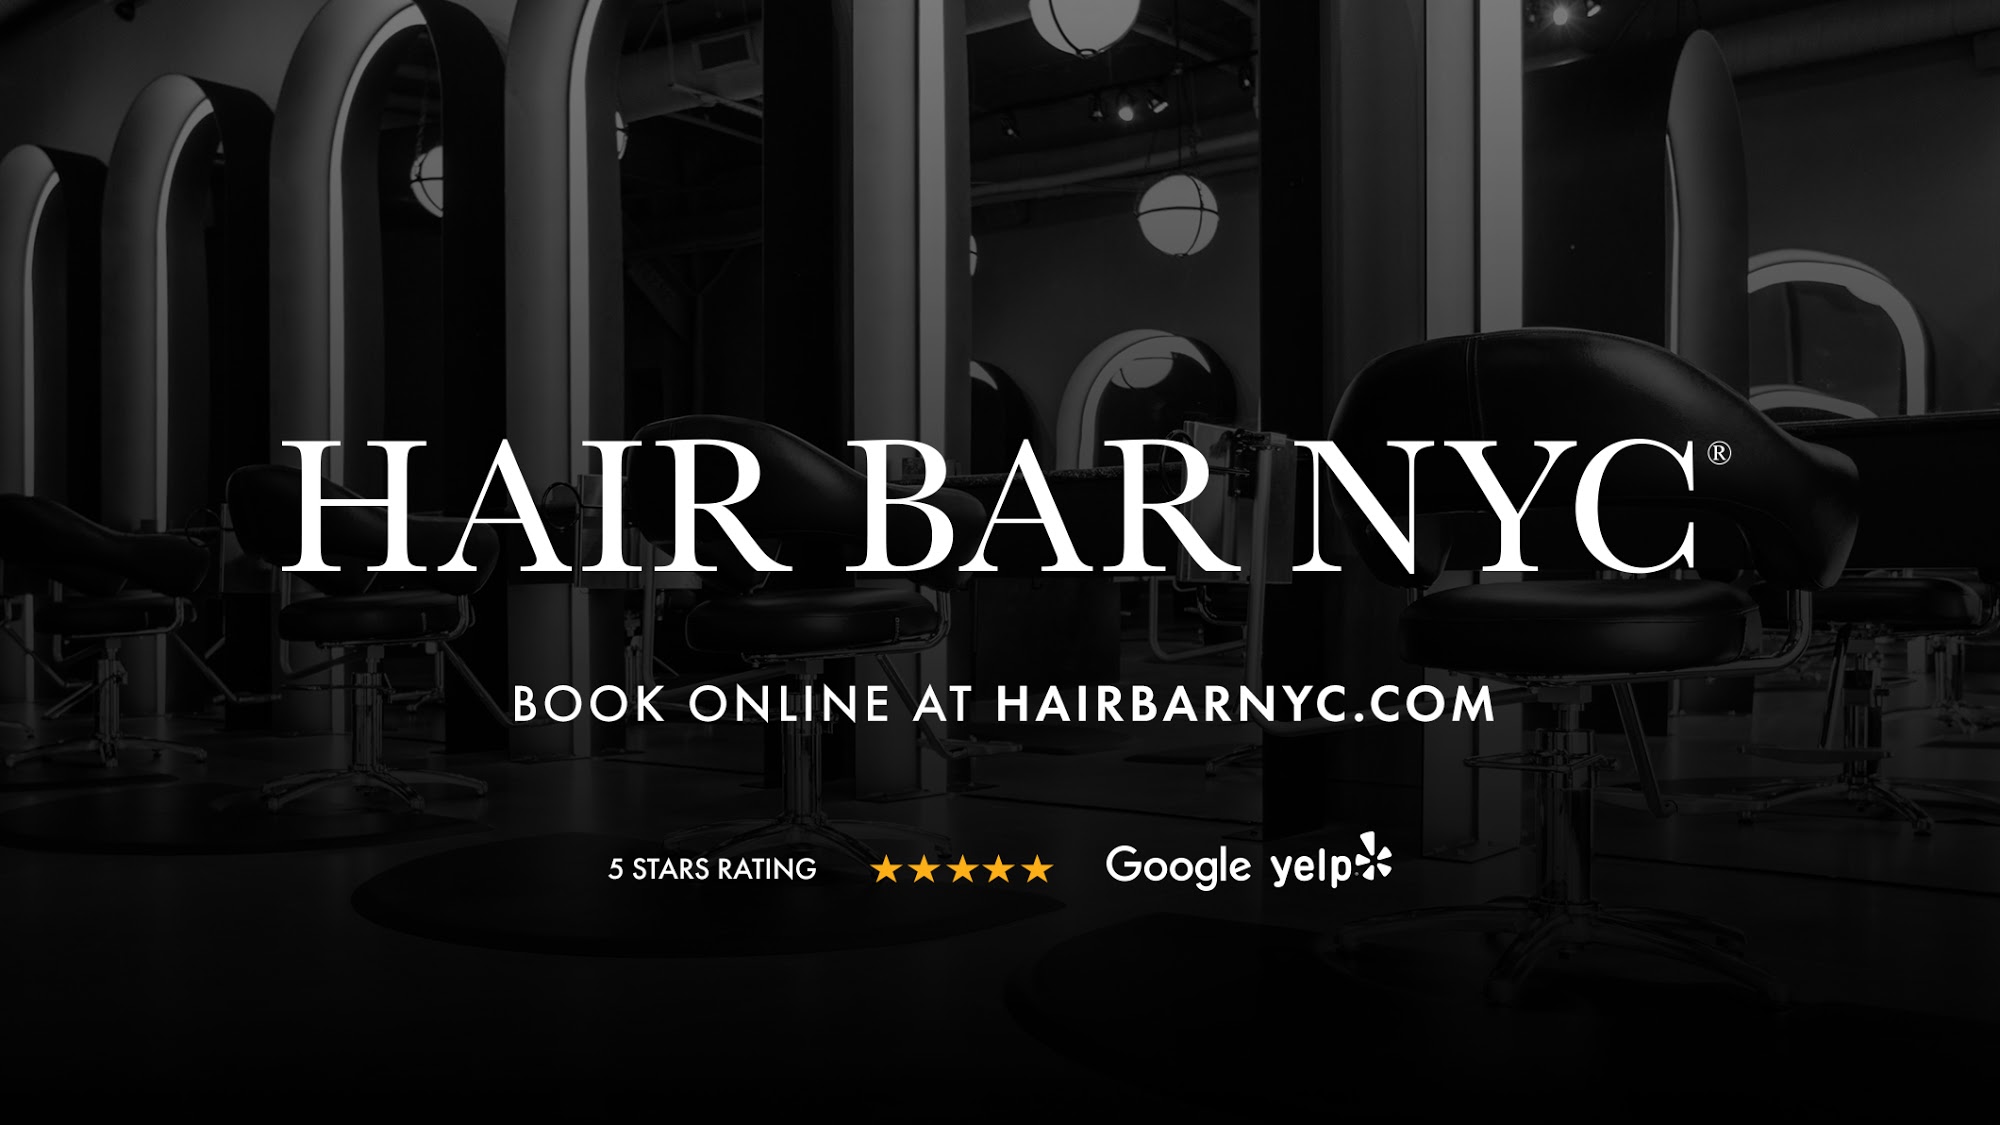 Beny's Hair Salon AKA Hair Bar NYC